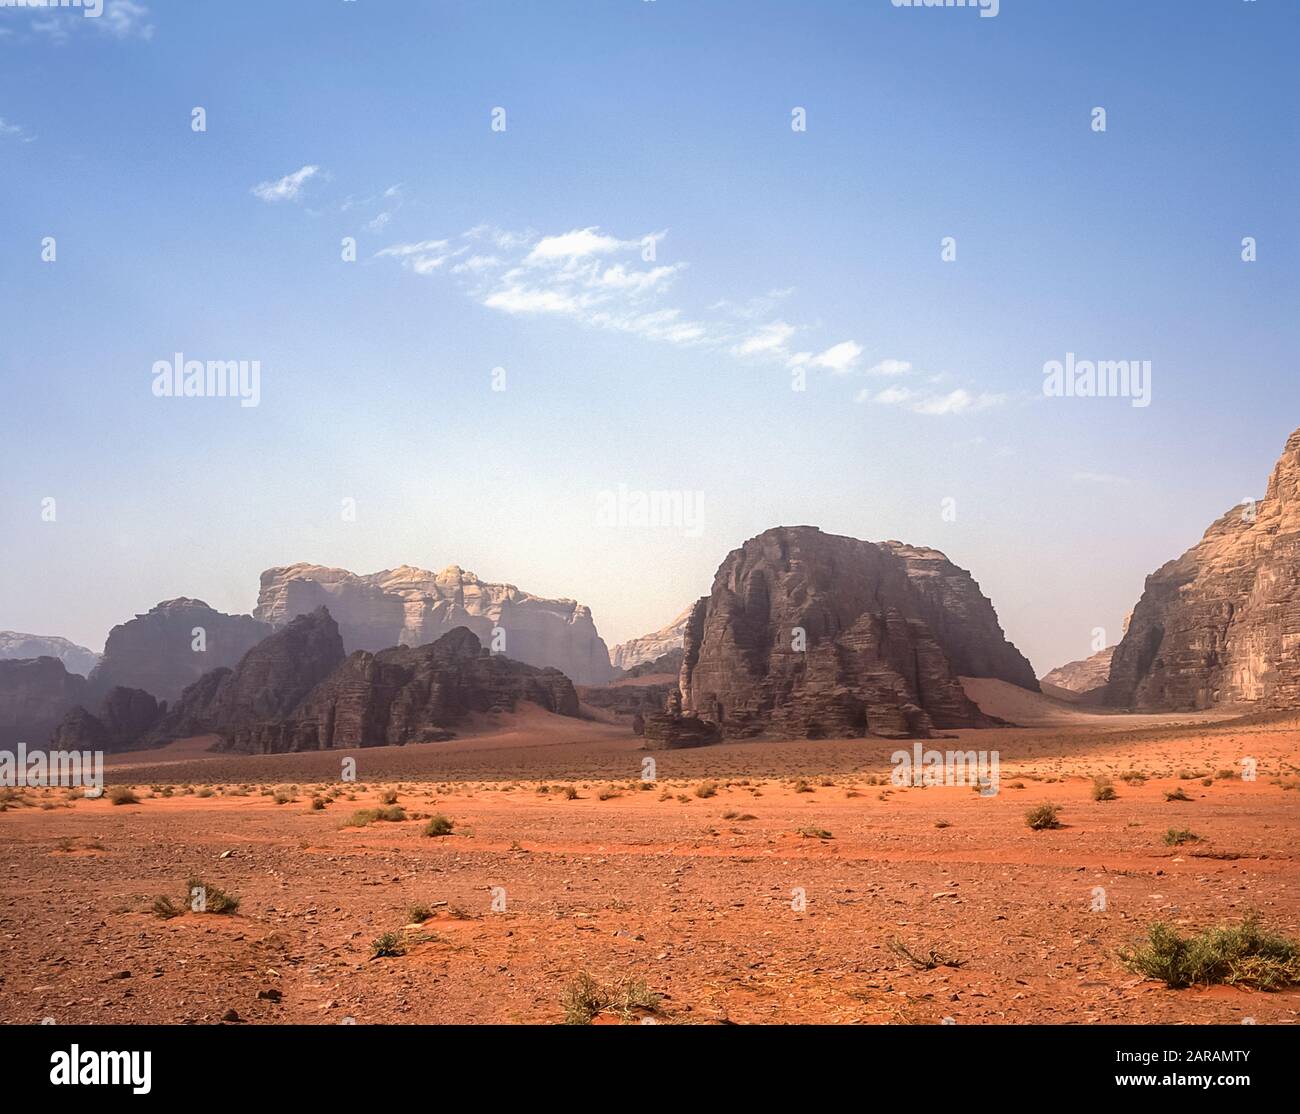 Jordanie. Paysages de montagne désertiques colorés au site du patrimoine mondial de l'UNESCO de Wadi Rum près du port d'Aqaba dans le sud de la Jordanie associé au Lawrence d'Arabie. Banque D'Images